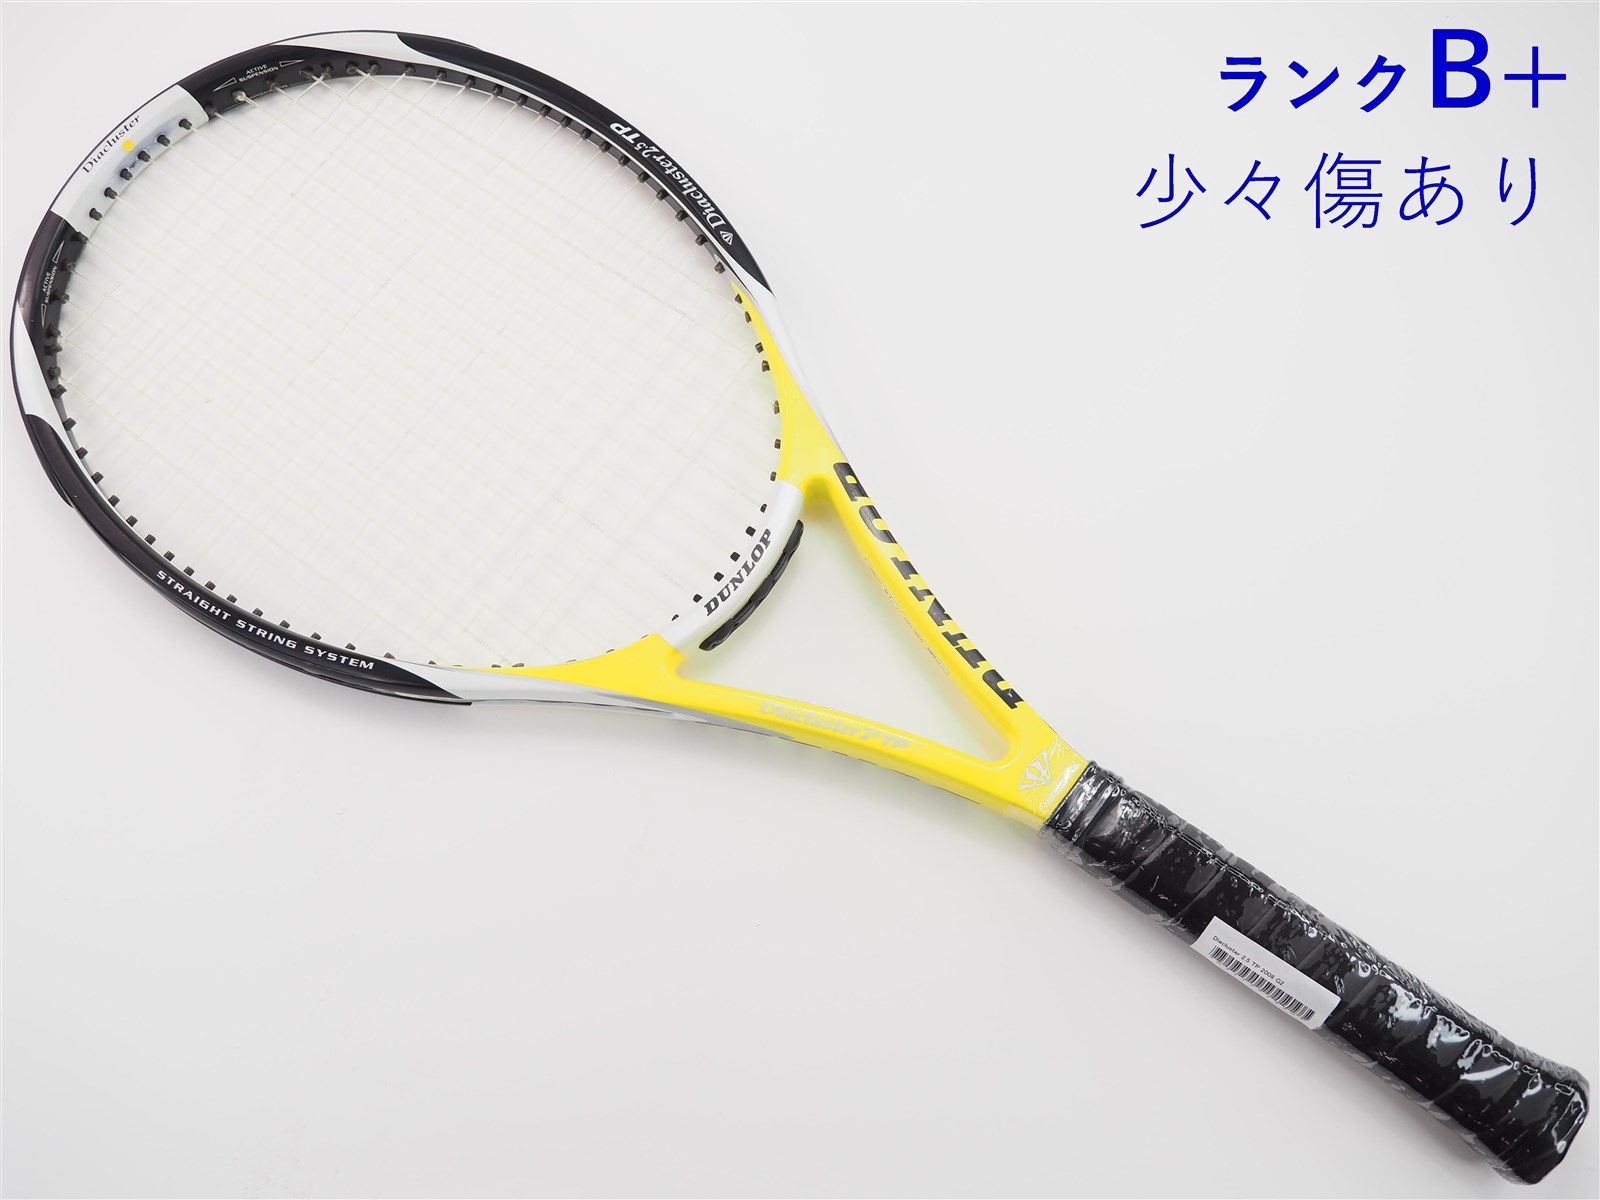 テニスラケット ダンロップ ダイアクラスター 10.0 エスエフ 2012年モデル (G2)DUNLOP Diacluster 10.0 SF 2012